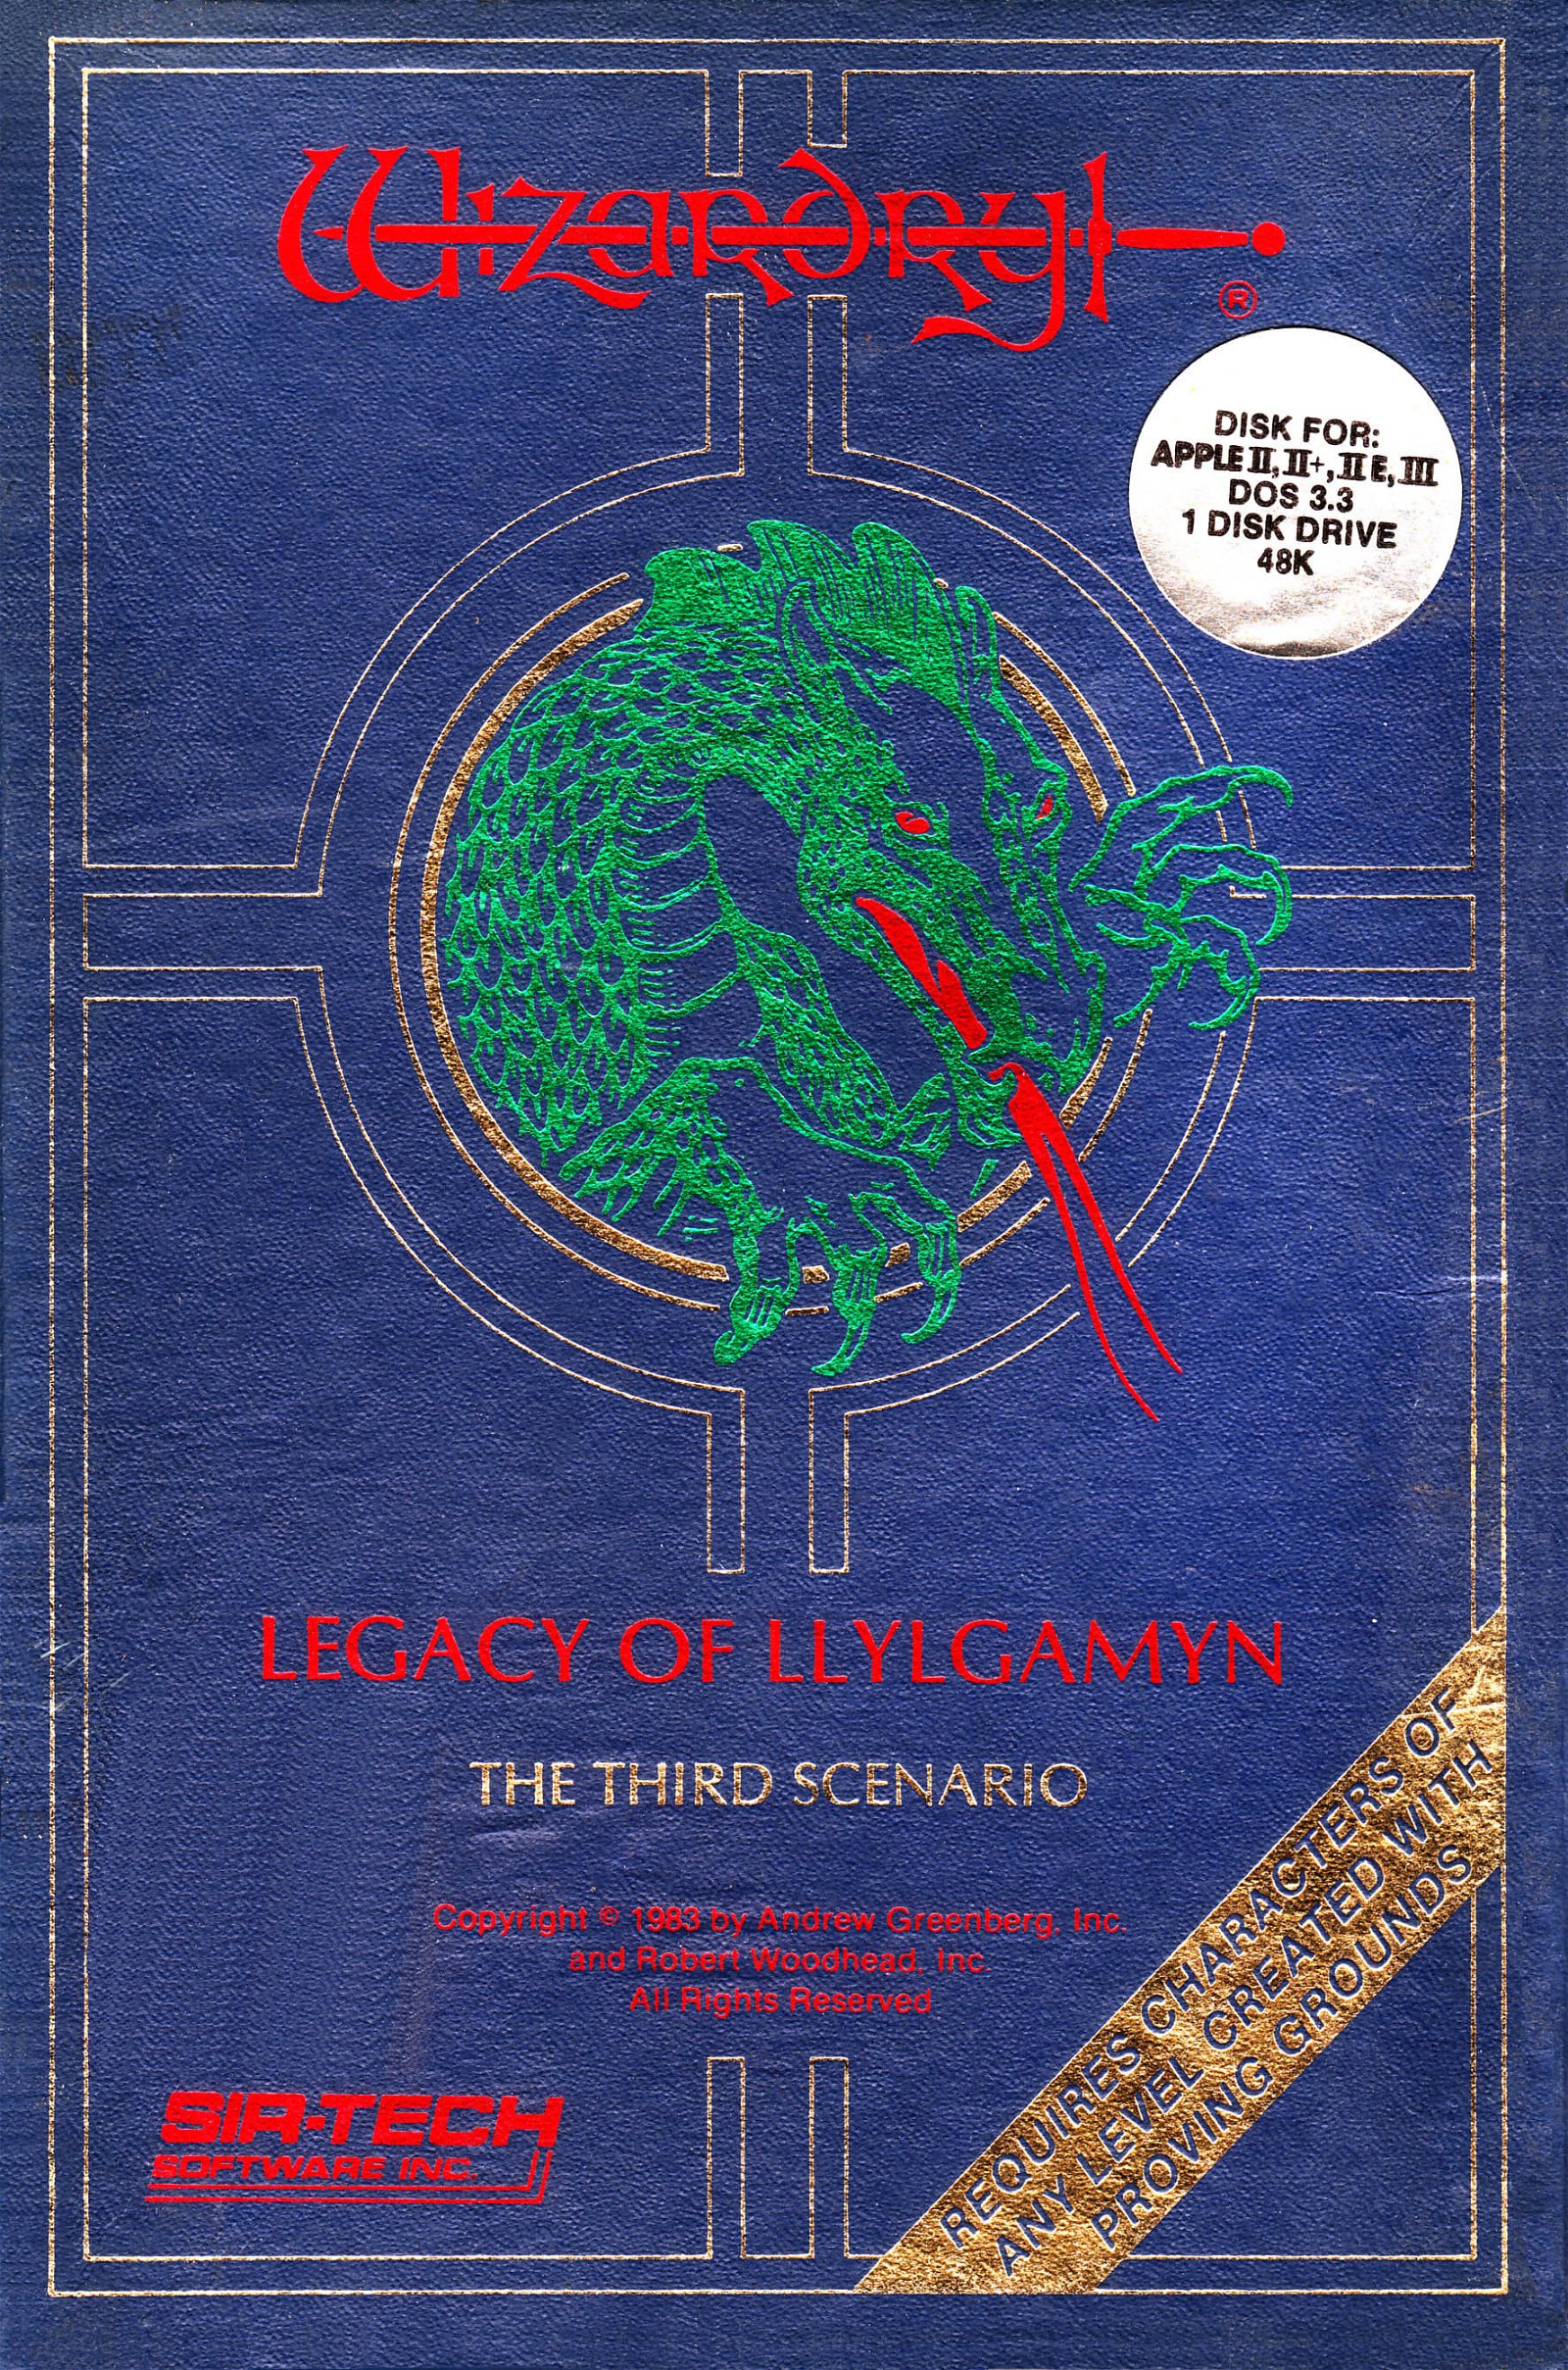 Image of Wizardry: Legacy of Llylgamyn - The Third Scenario